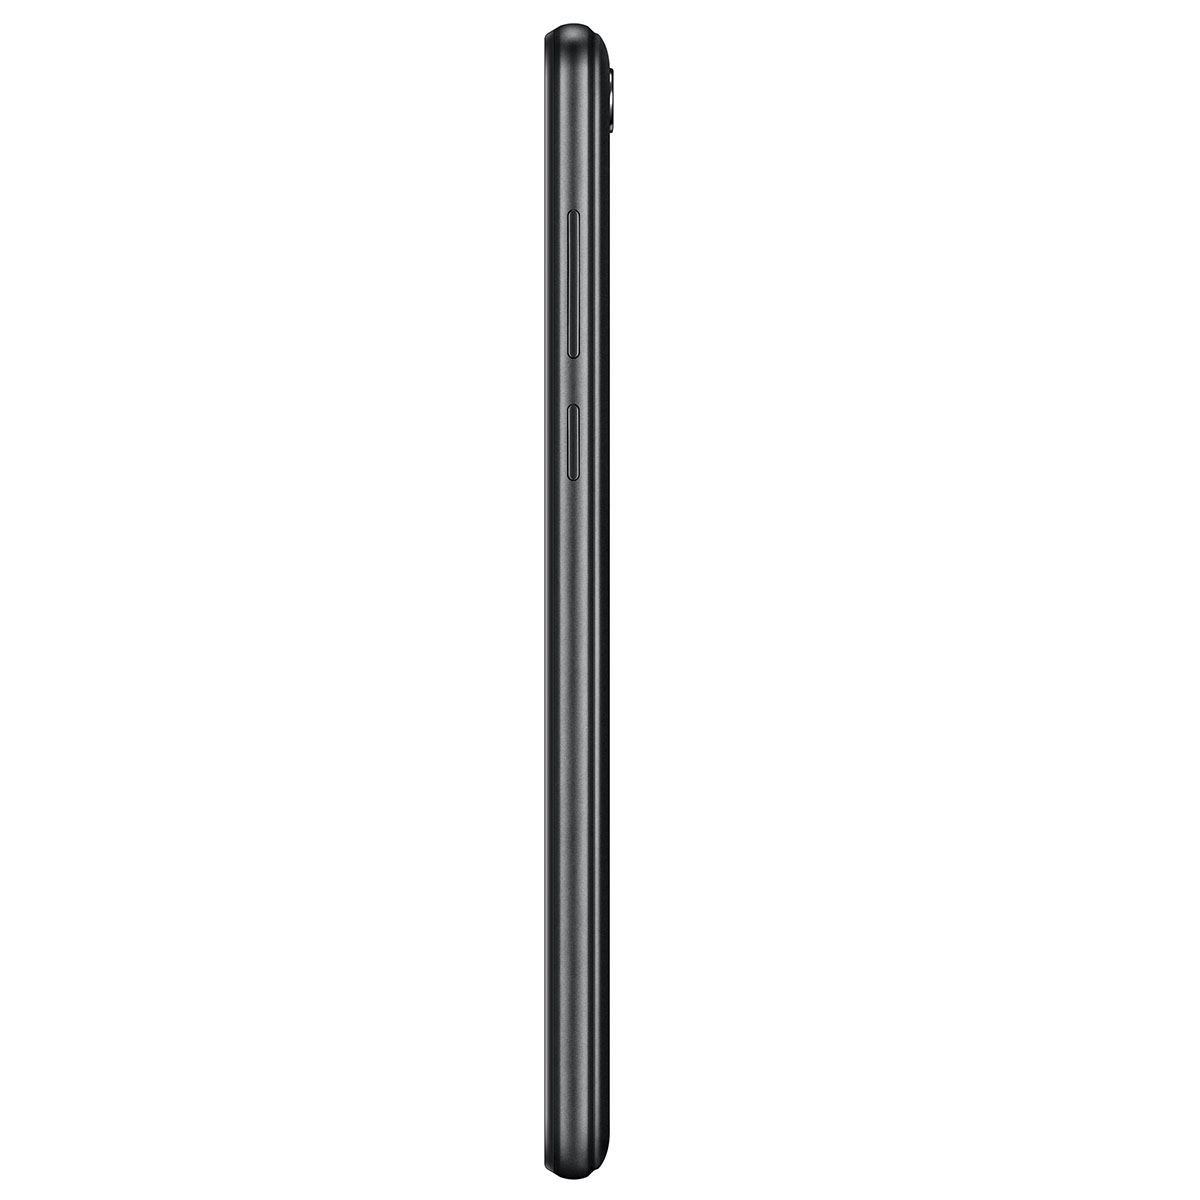 Celular Huawei Y5 2018 Color Negro R9 (Telcel)